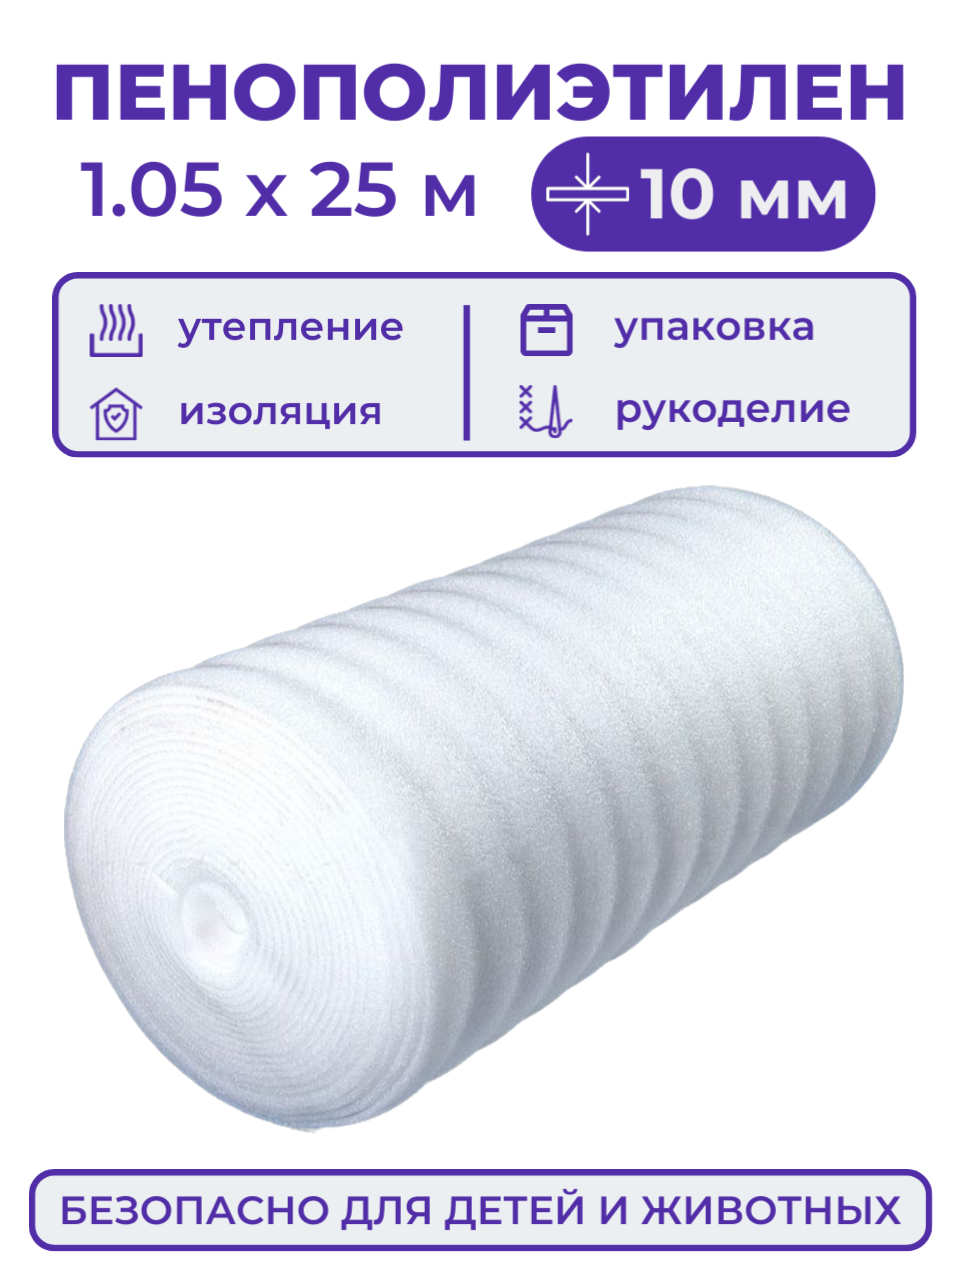 Вспененный полиэтилен 10 мм рулон 1.05х25 м (26.25 м2) пенополиэтилен утеплитель подложка под ковер или ламинат теплоизоляция для теплого пола